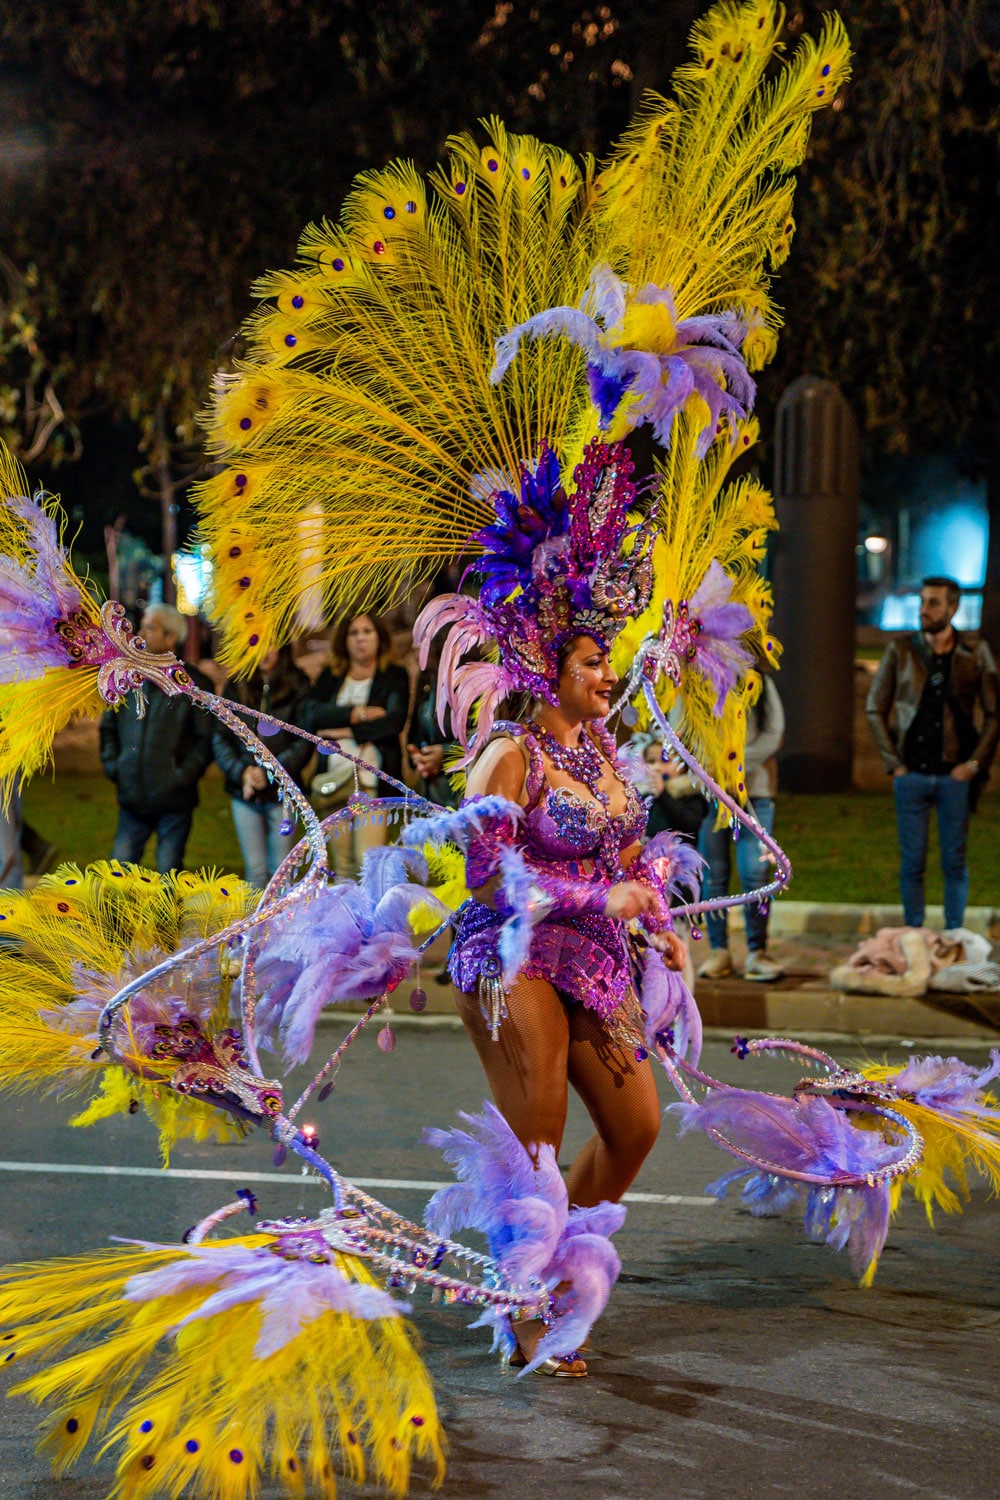 Celebrating Carnival in Spain